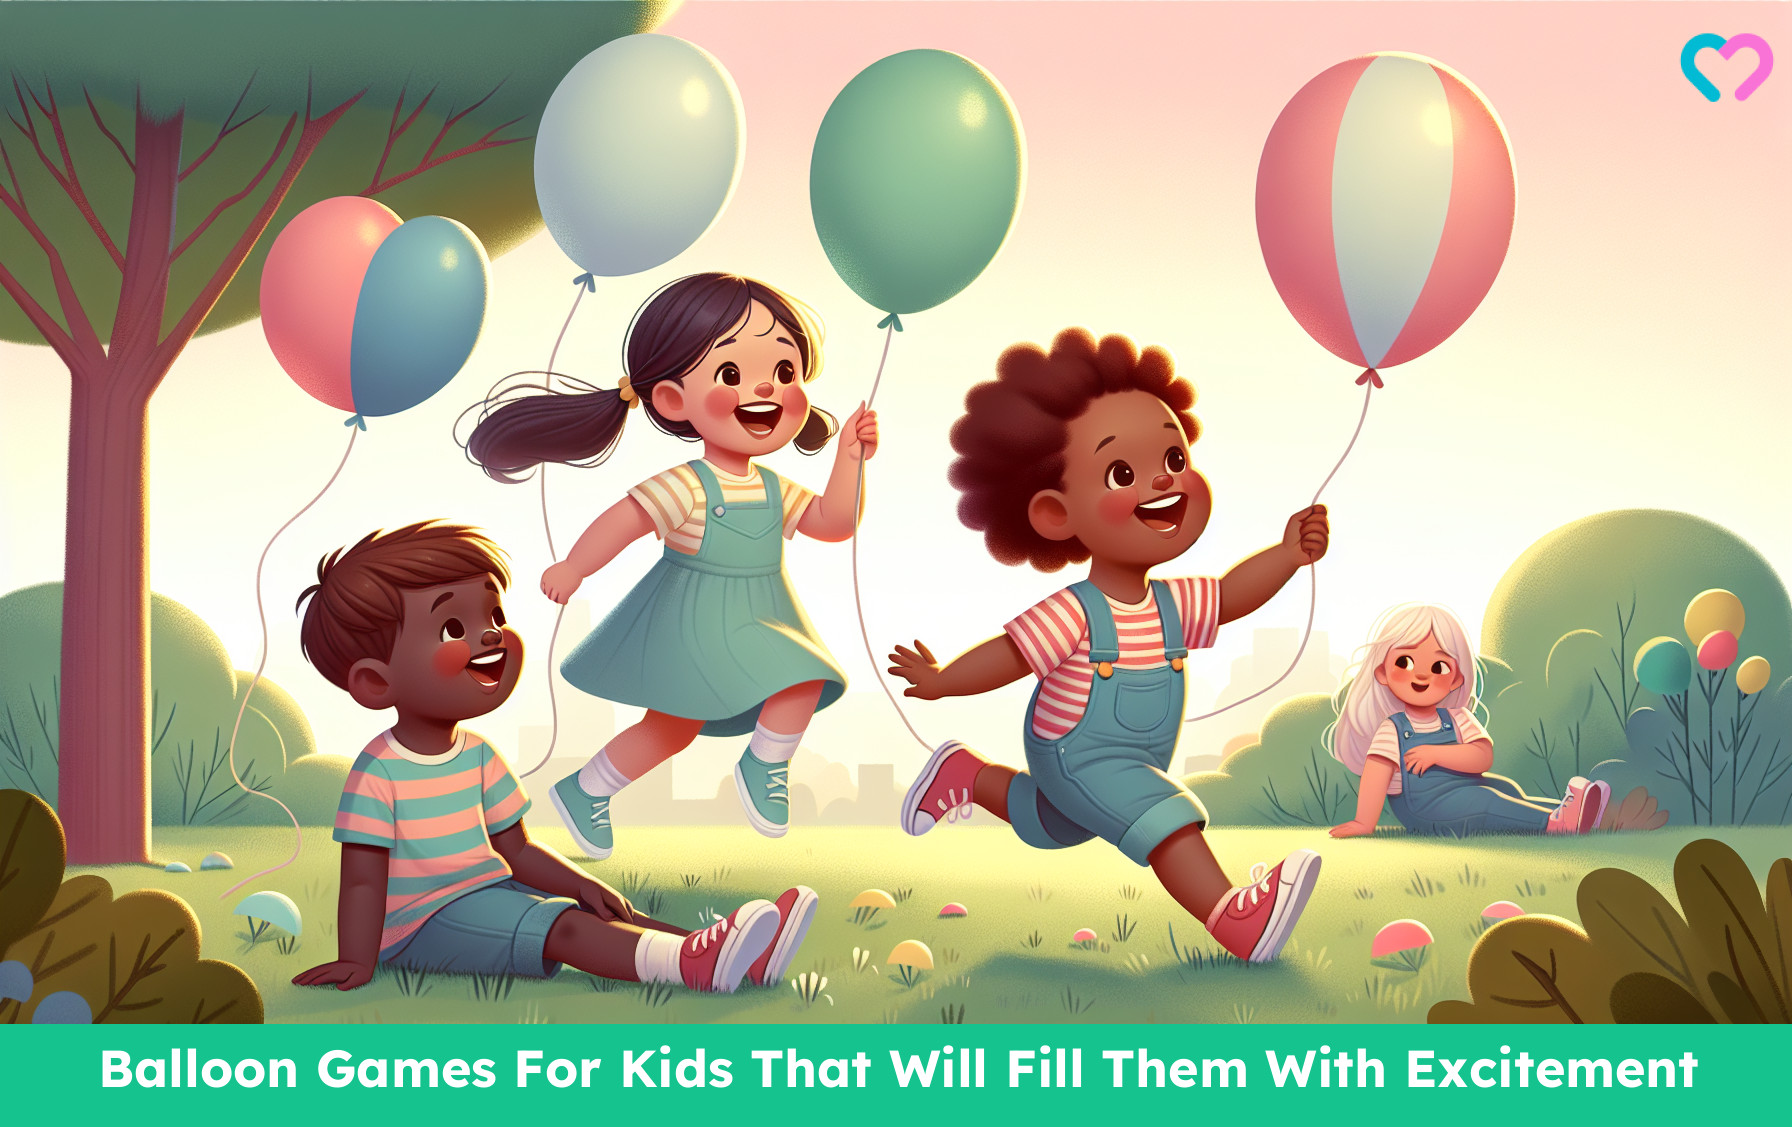 Balloon Games For Kids_illustration